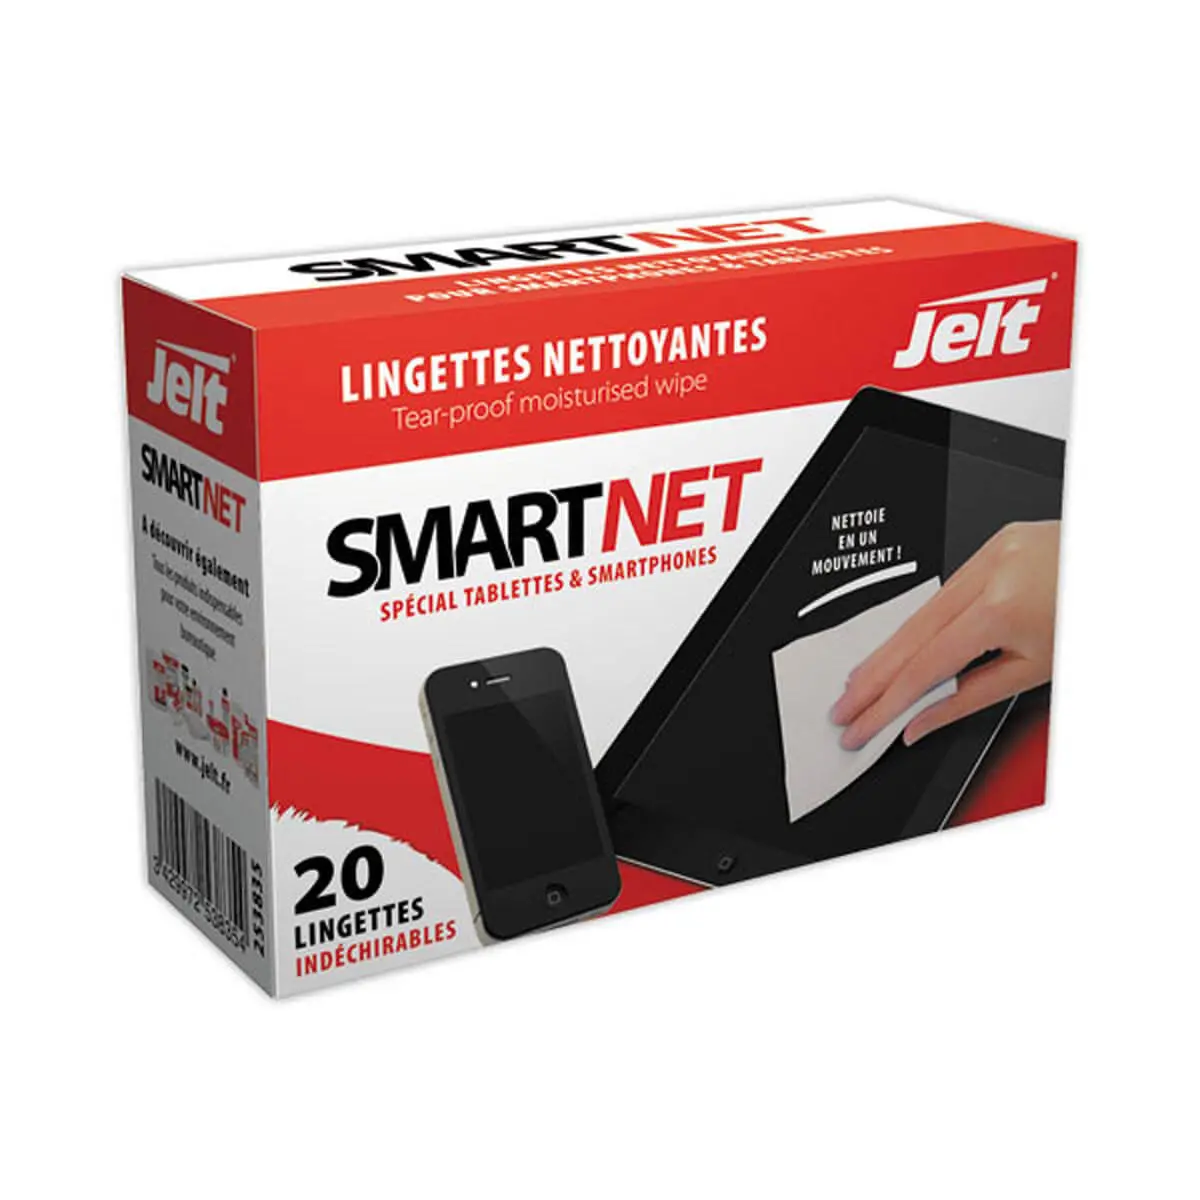 20 lingettes SMARTNET pour smartphoneset tablettes photo du produit